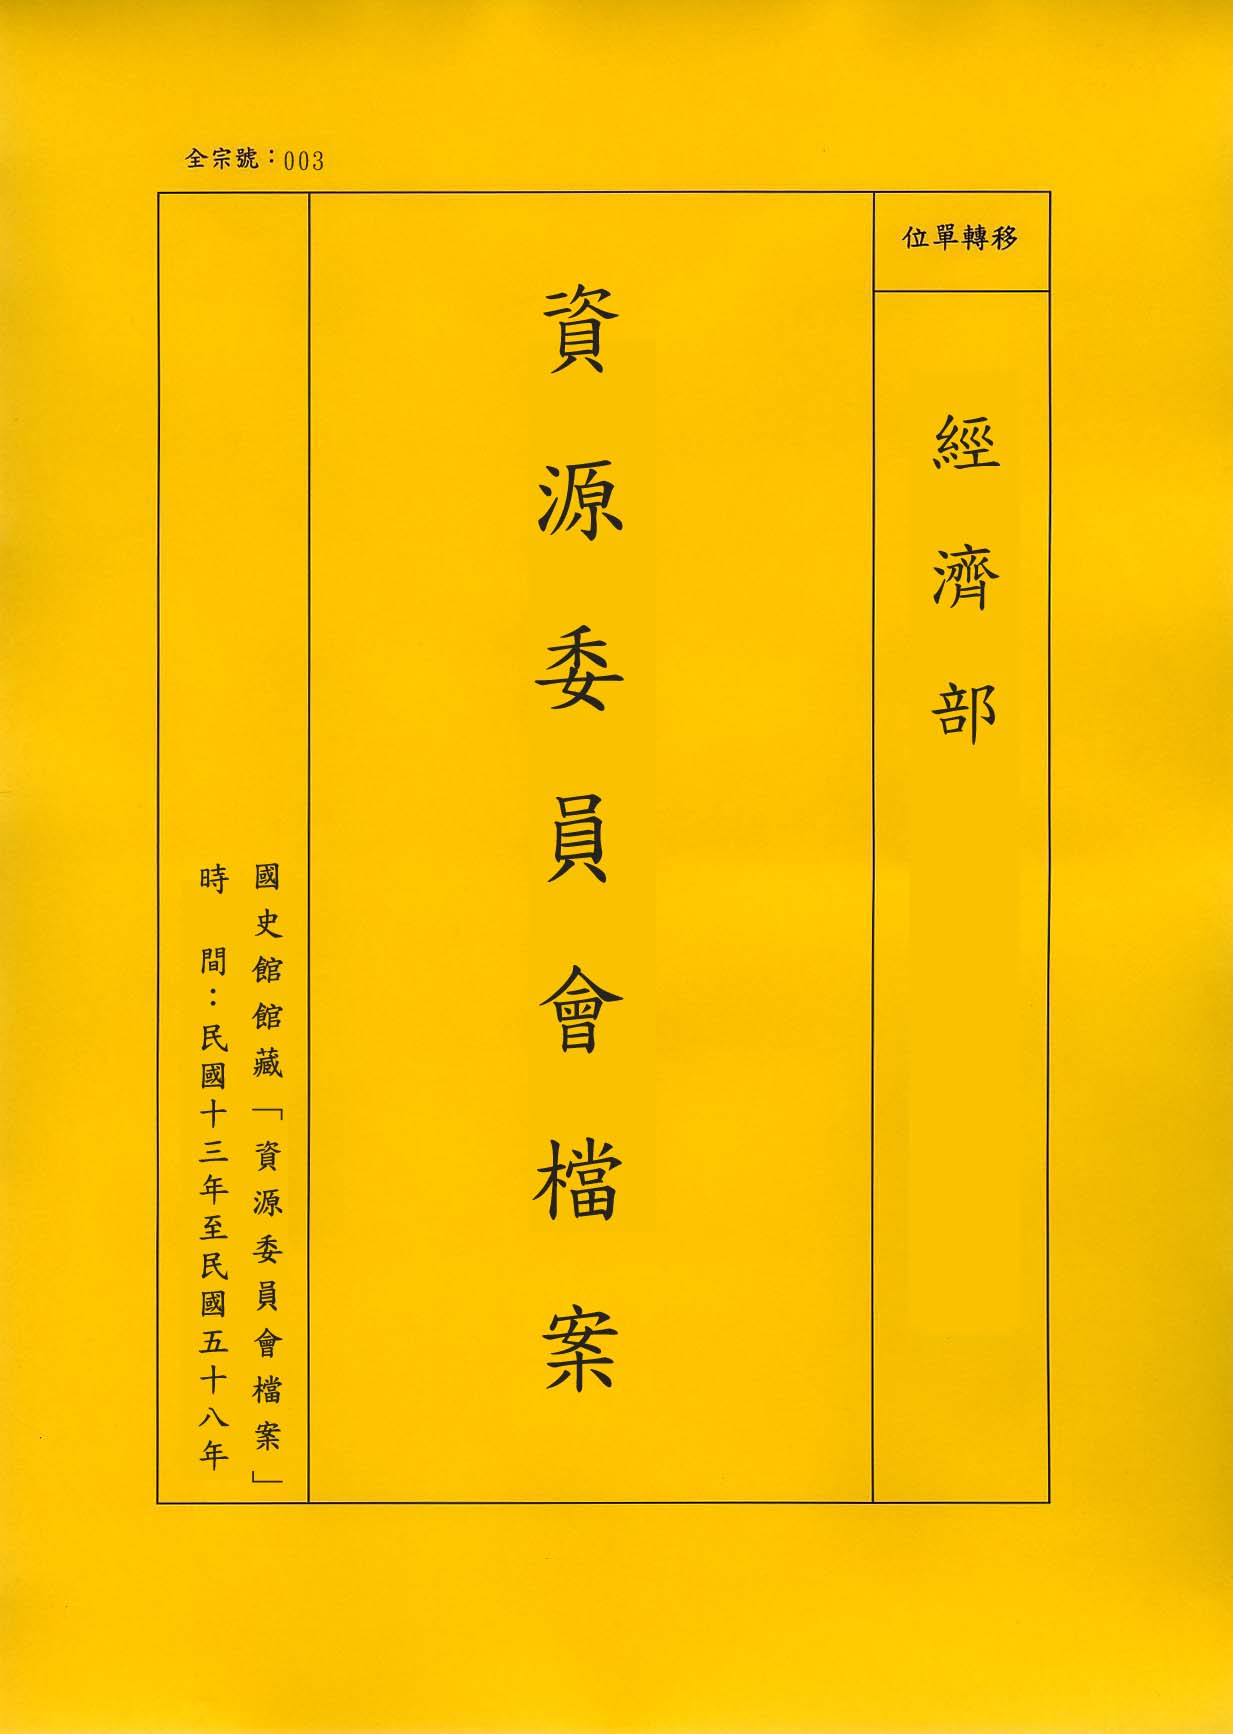 卷名:柳州電廠三十六年度會計報表案(003-010403-0165)